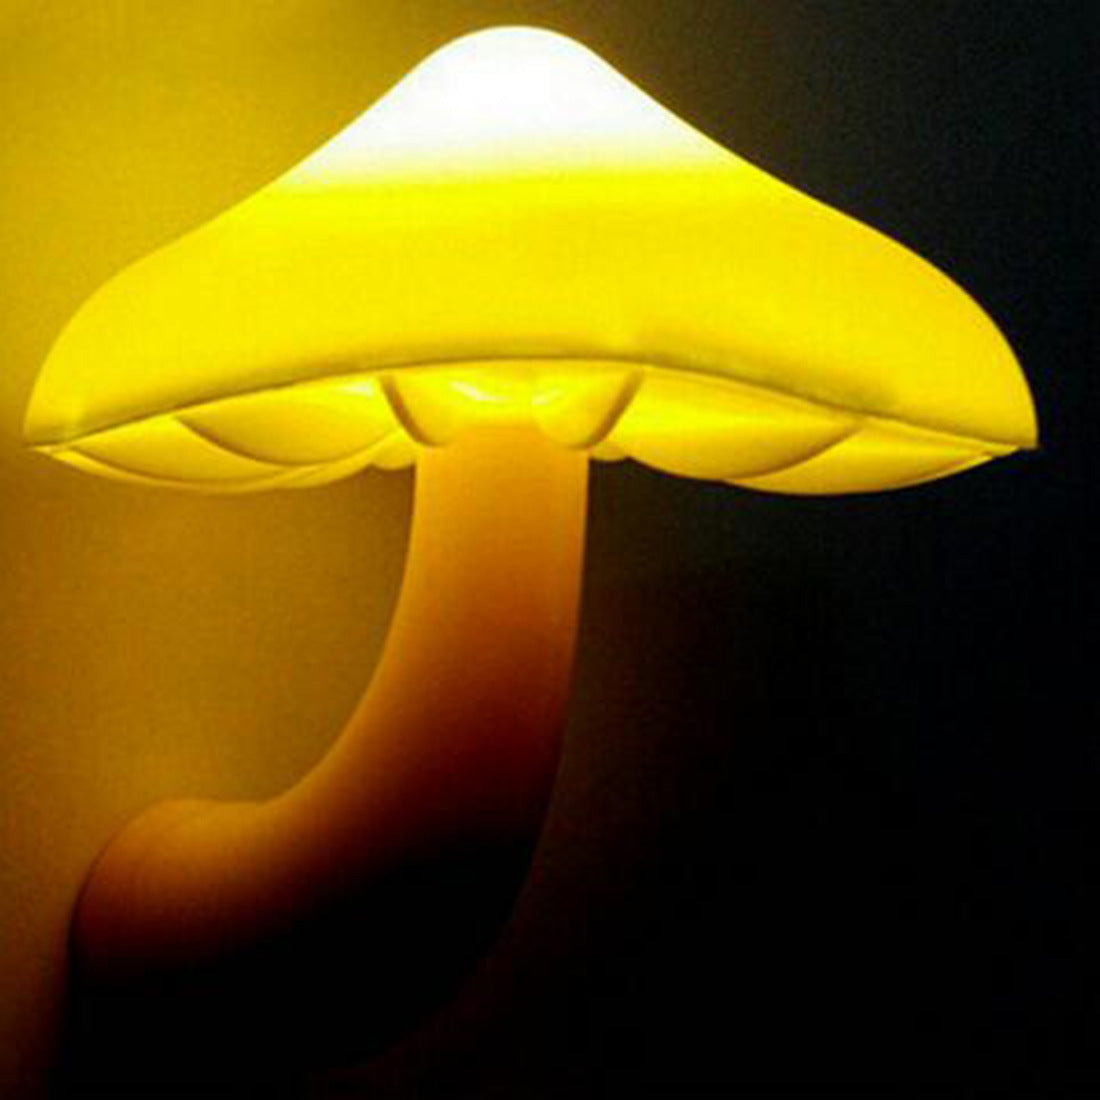 Mushroom LED Night Light